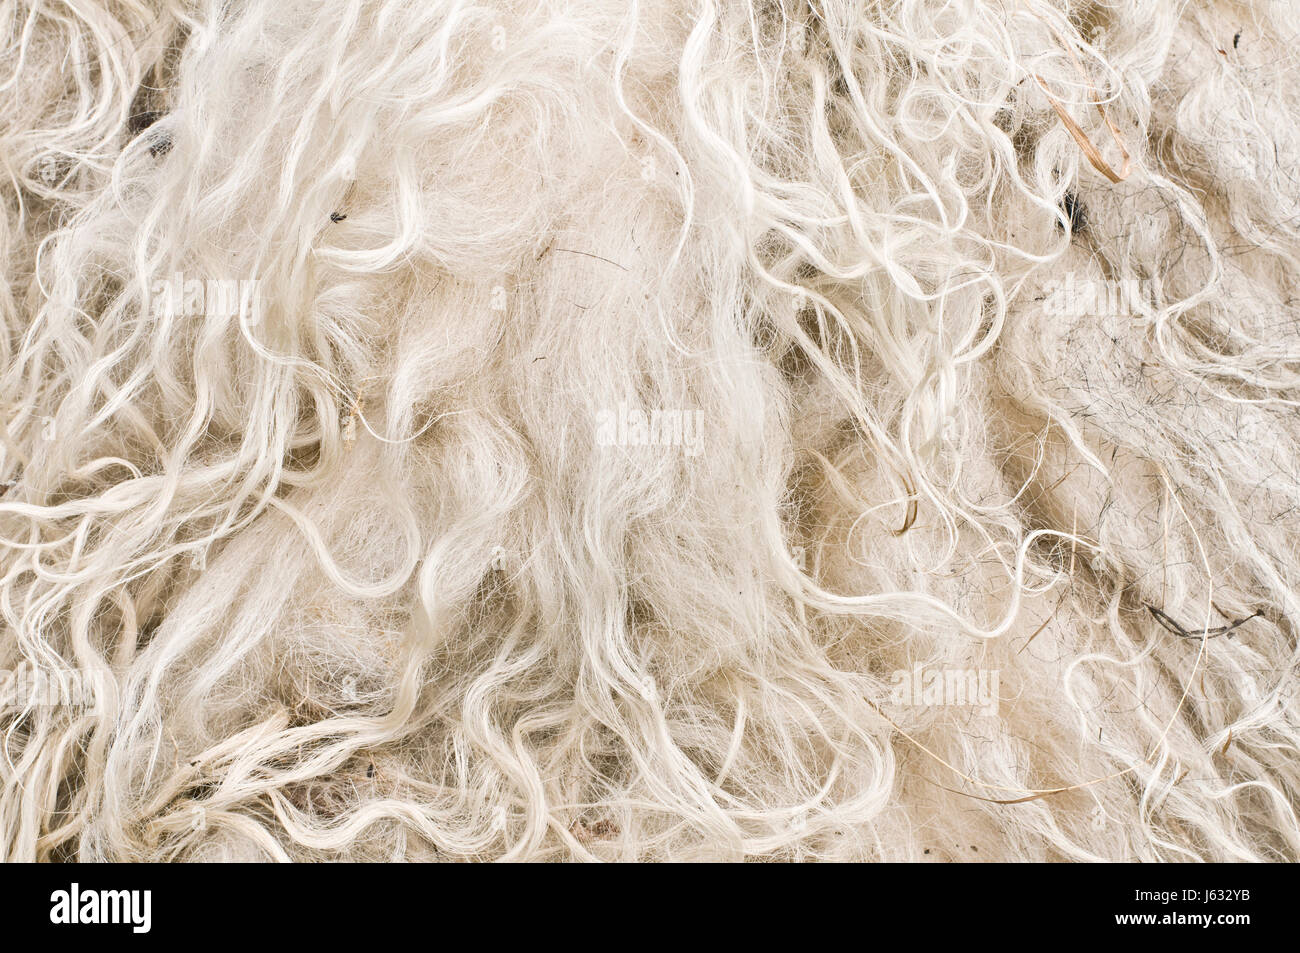 kalten Haare Schafe Wolle Haare Wärme Wärme kalte Haare Schafwolle weben stricken Filz Stockfoto